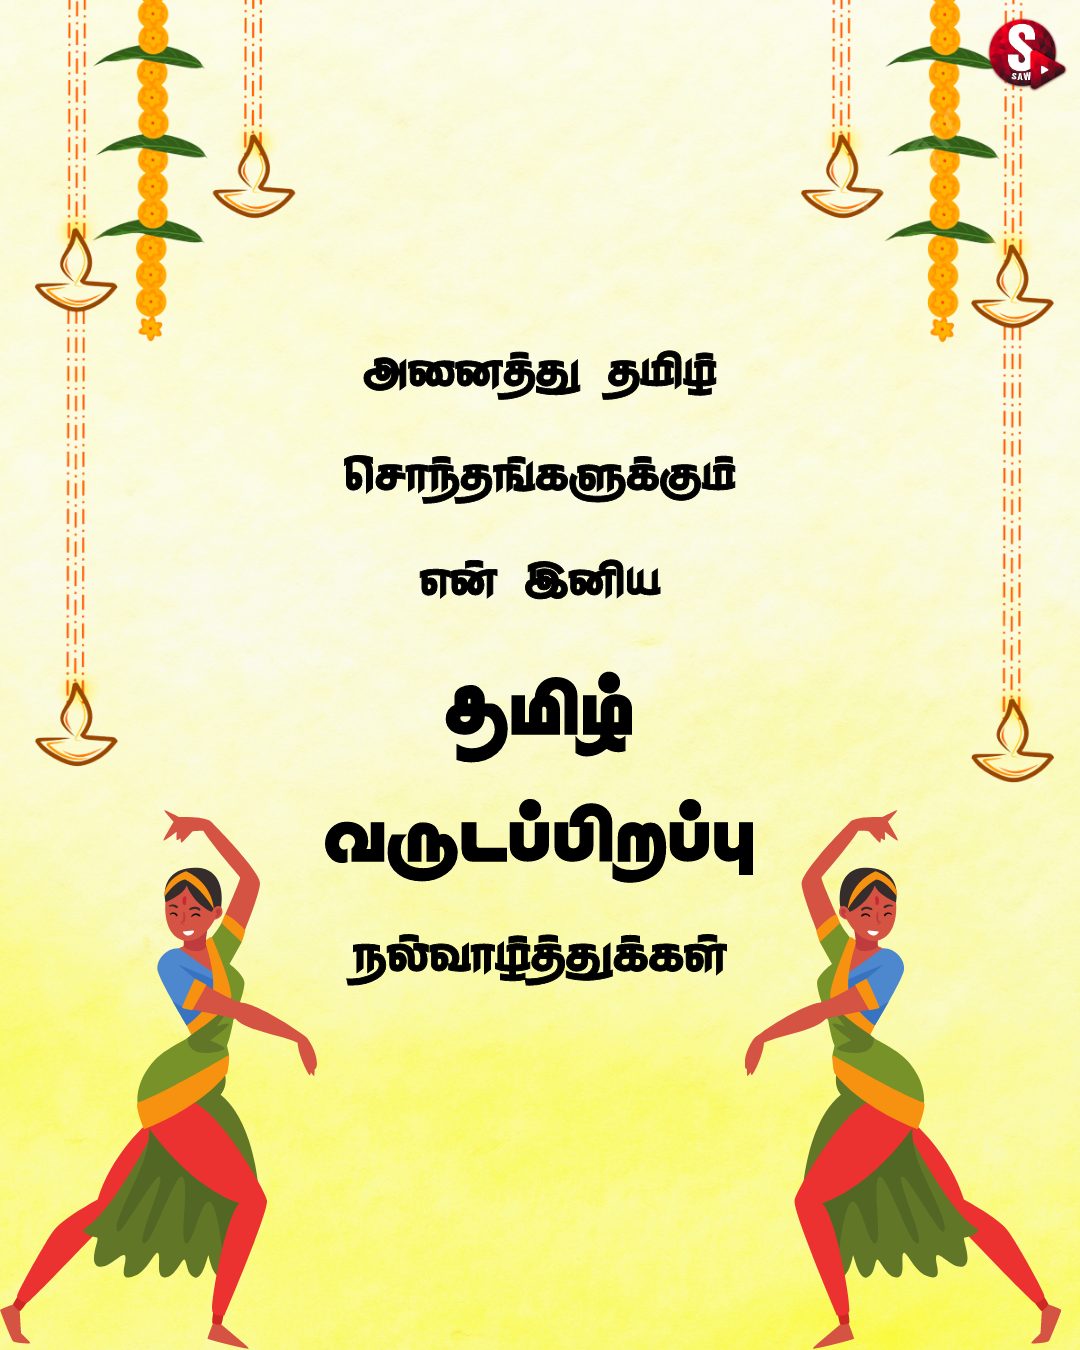 தமிழ் புத்தாண்டு நல்வாழ்த்துக்கள் 2023.. | Happy Tamil New Year Wishes Quotes in Tamil